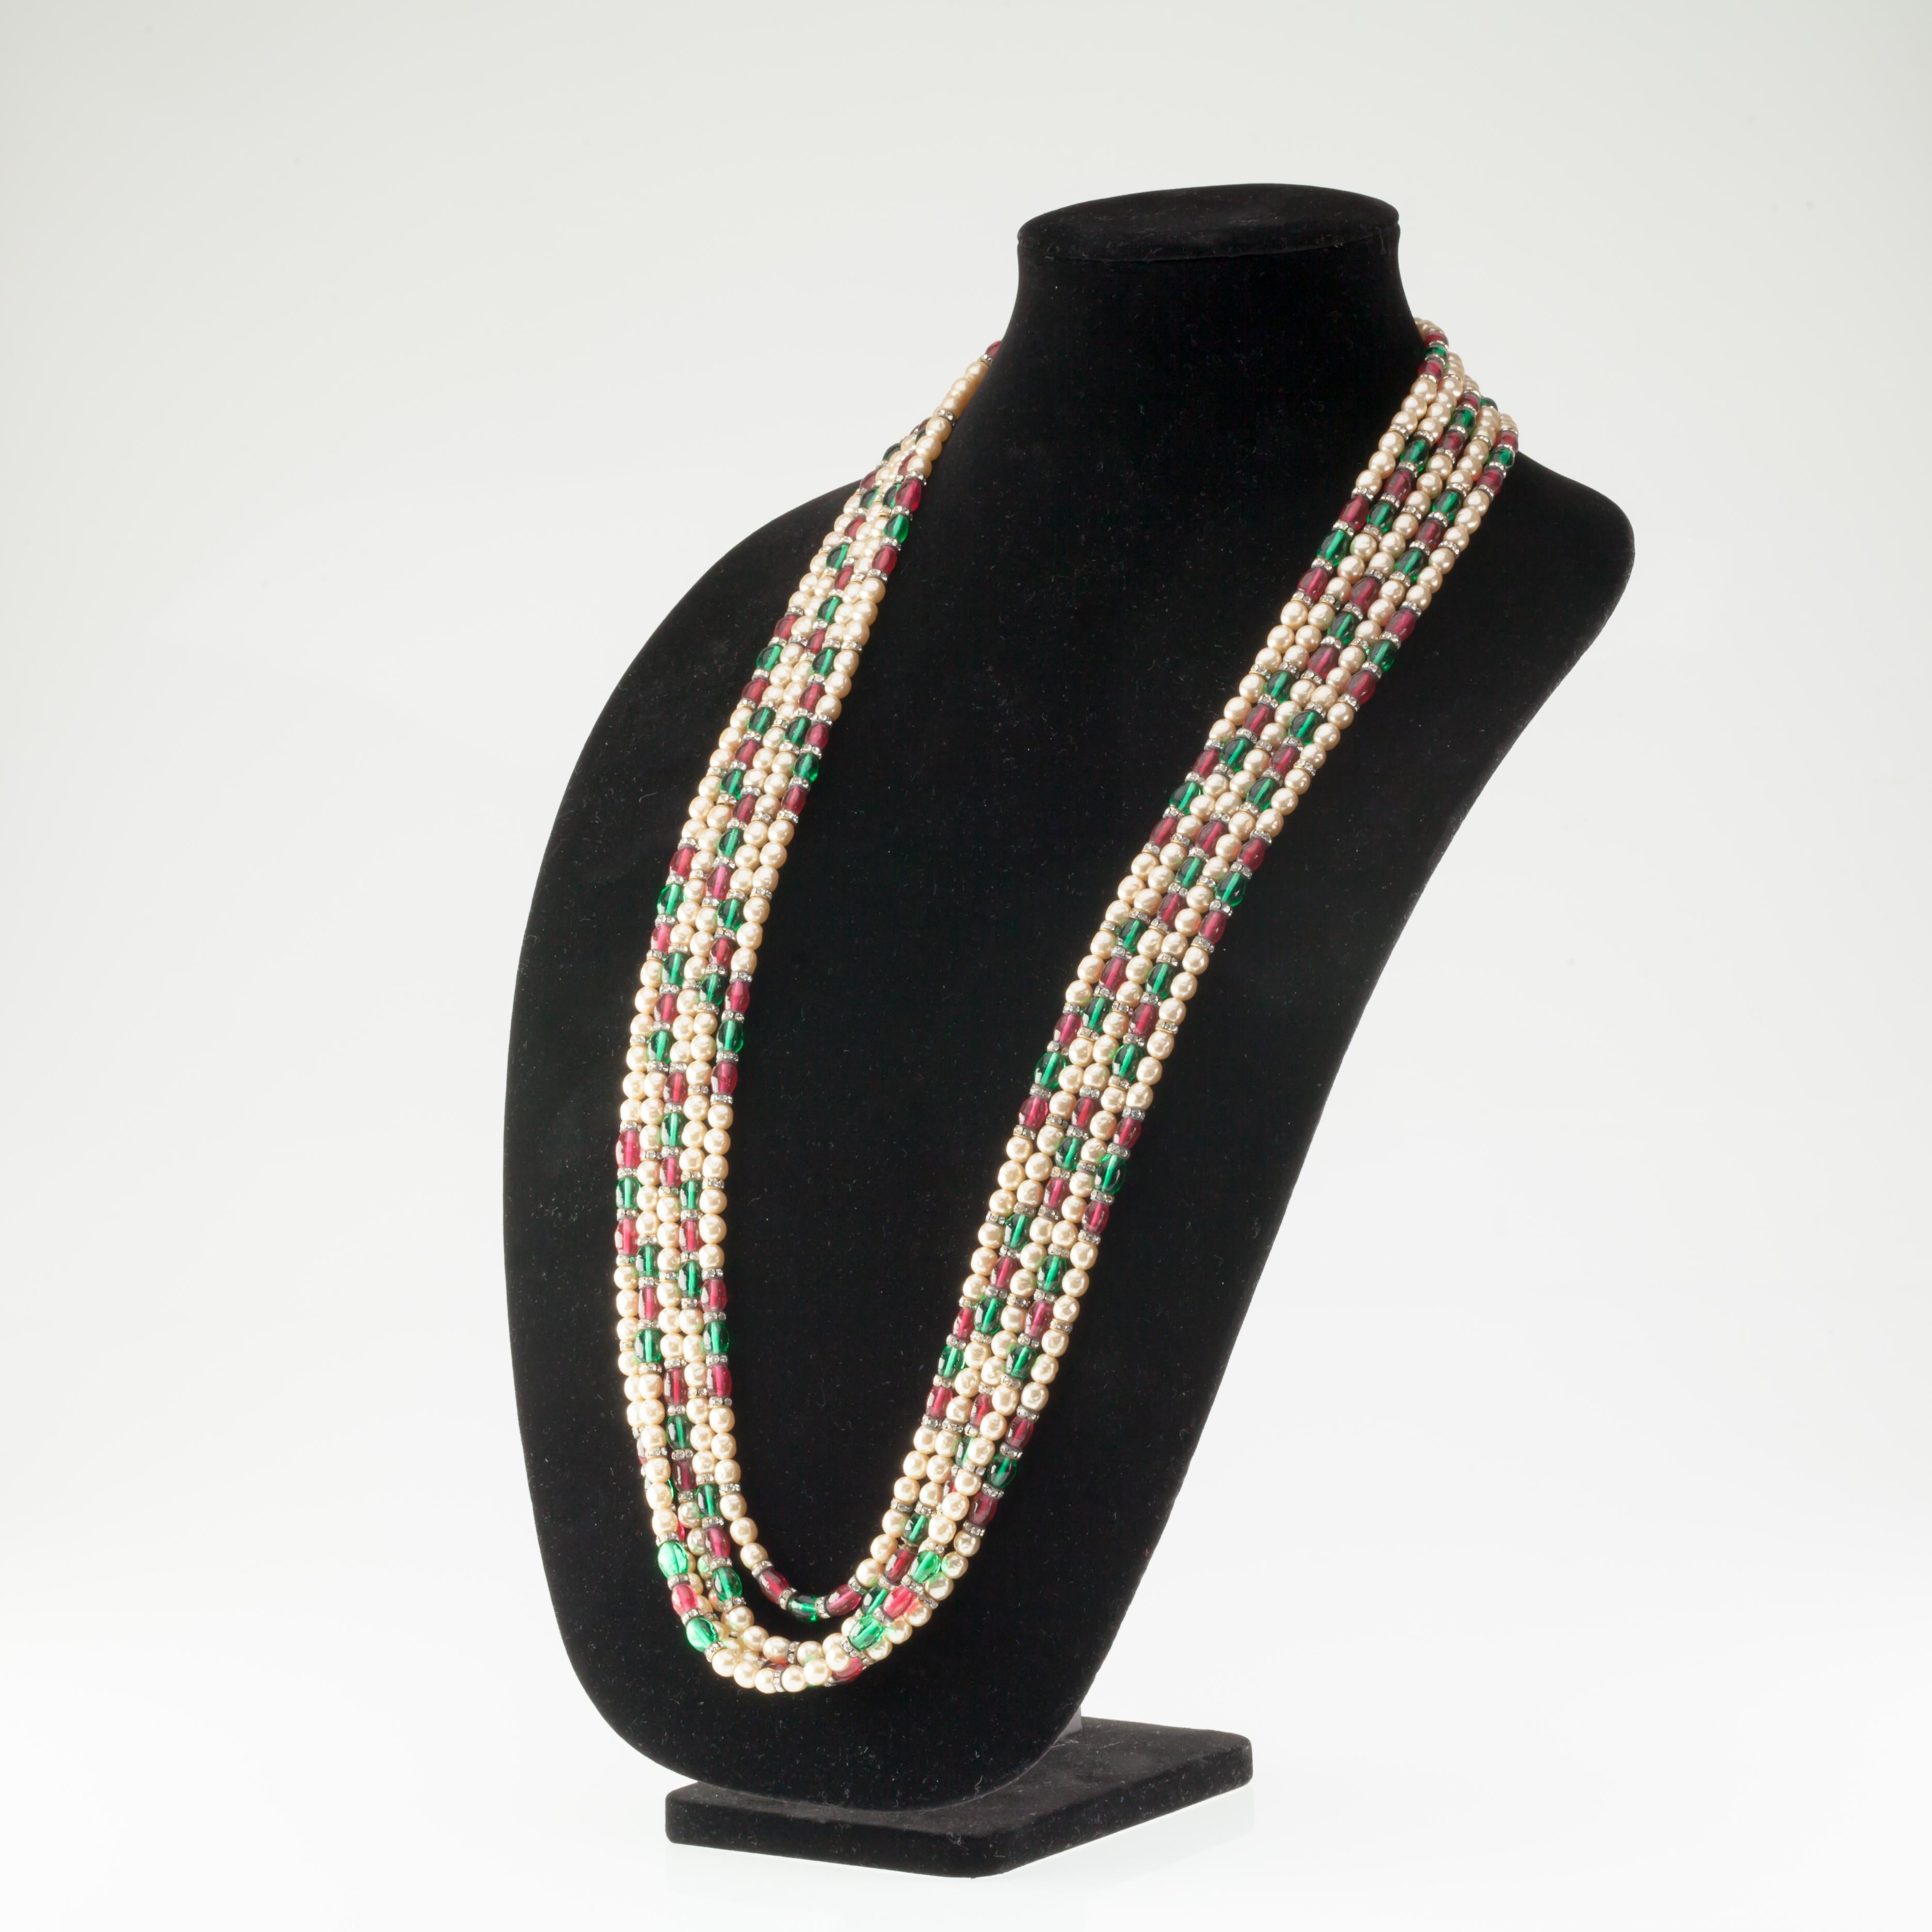 Magnifique collier de fantaisie Chanel à 5 brins
Comprend 5 rangs croissants de fausses perles alternées et de perles Gripoix vertes et rouges avec des éléments sertis de cristal.
Année de fabrication : 1970s (Vintage Style Chanel Tag)
Longueur du